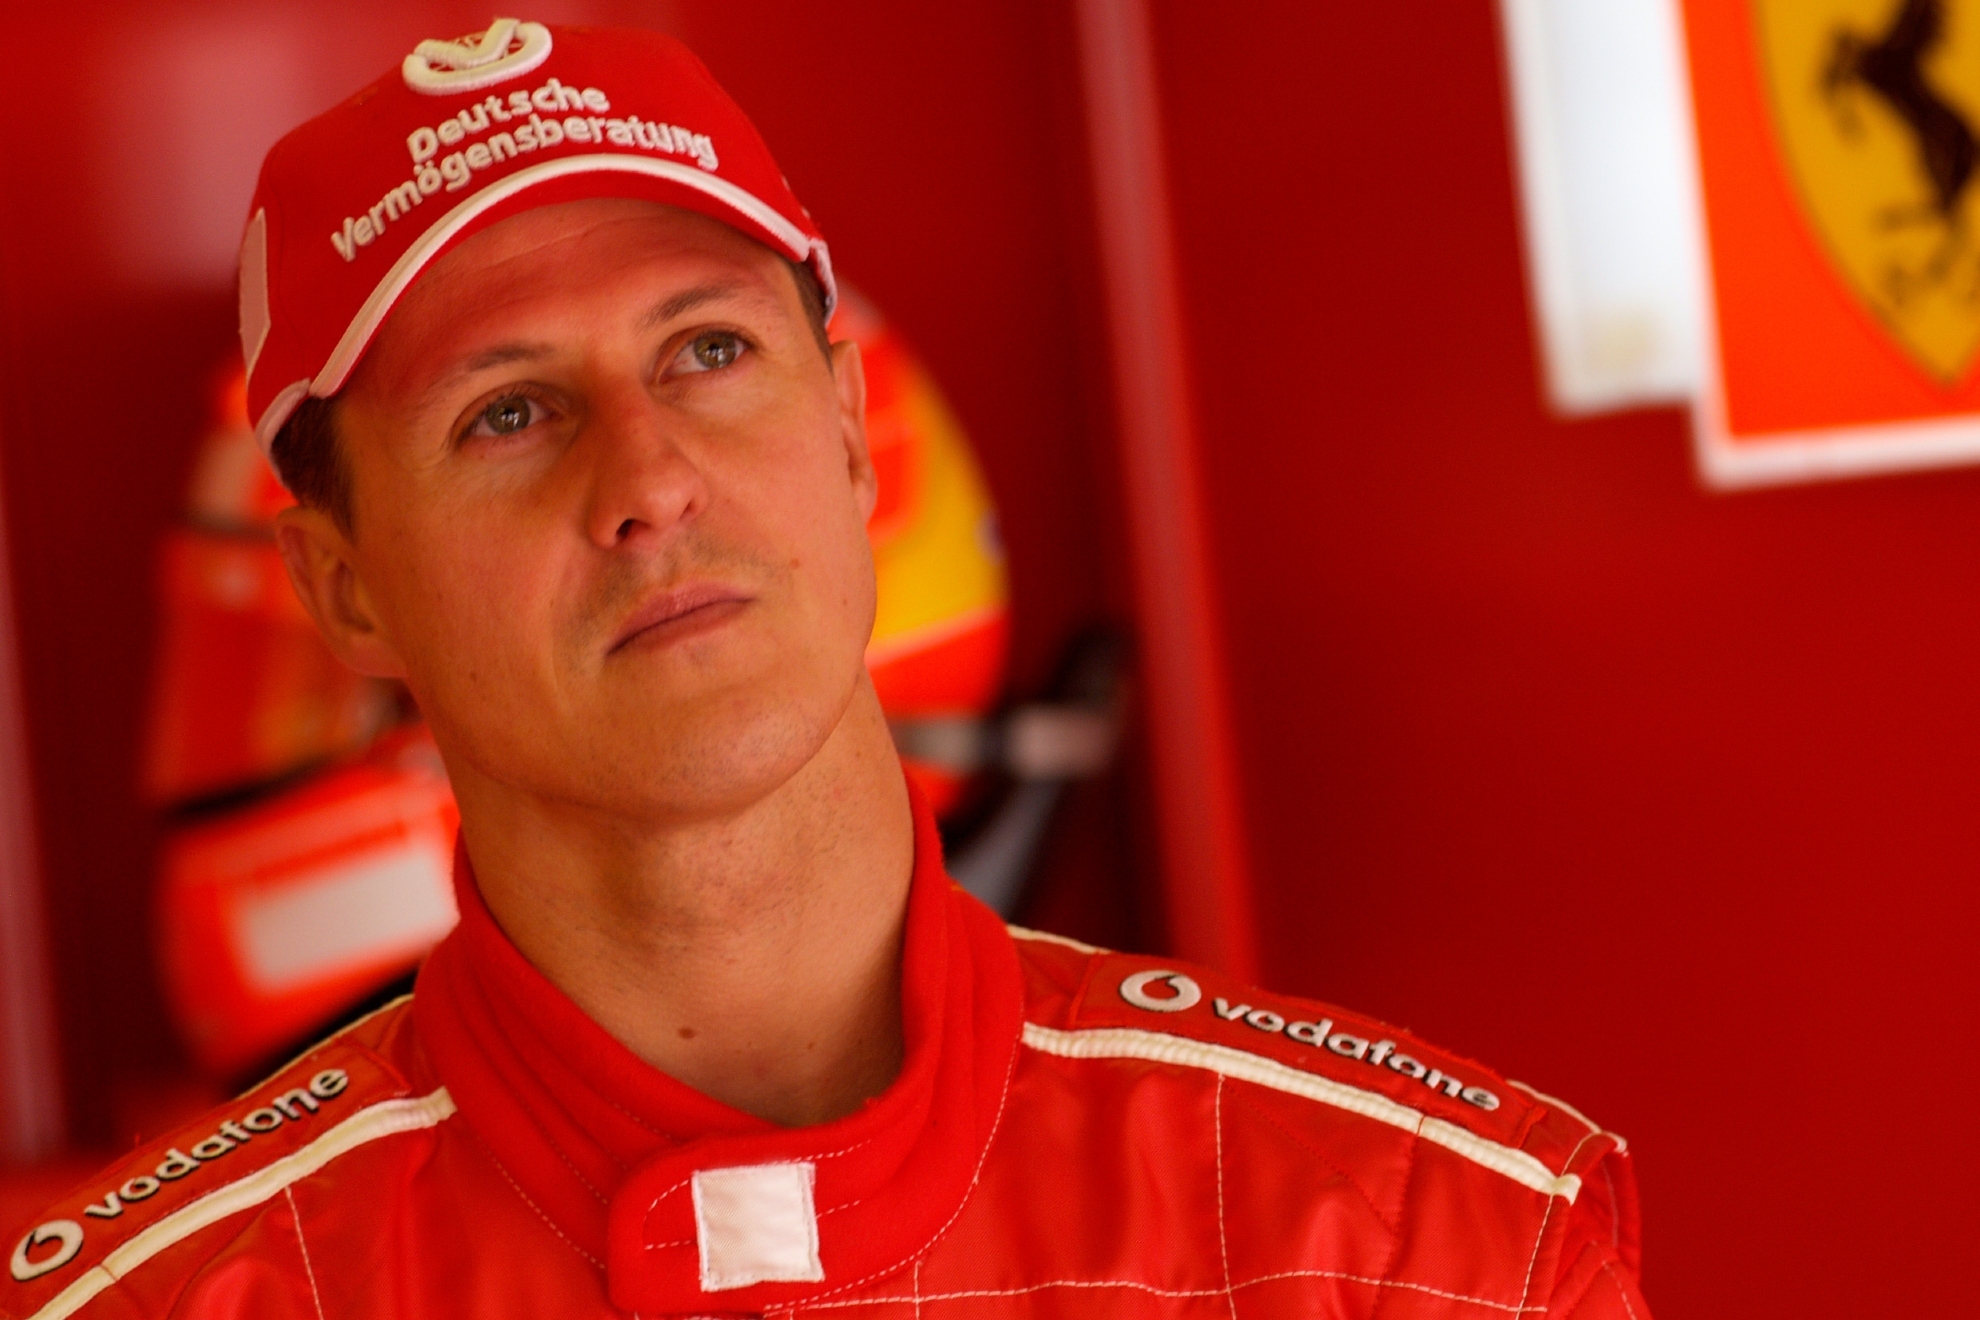 Huyền thoại F1 Michael Schumacher đóng vai trò bất ngờ trong chuyện tình của minh tinh Dương Tử Quỳnh - Ảnh 3.